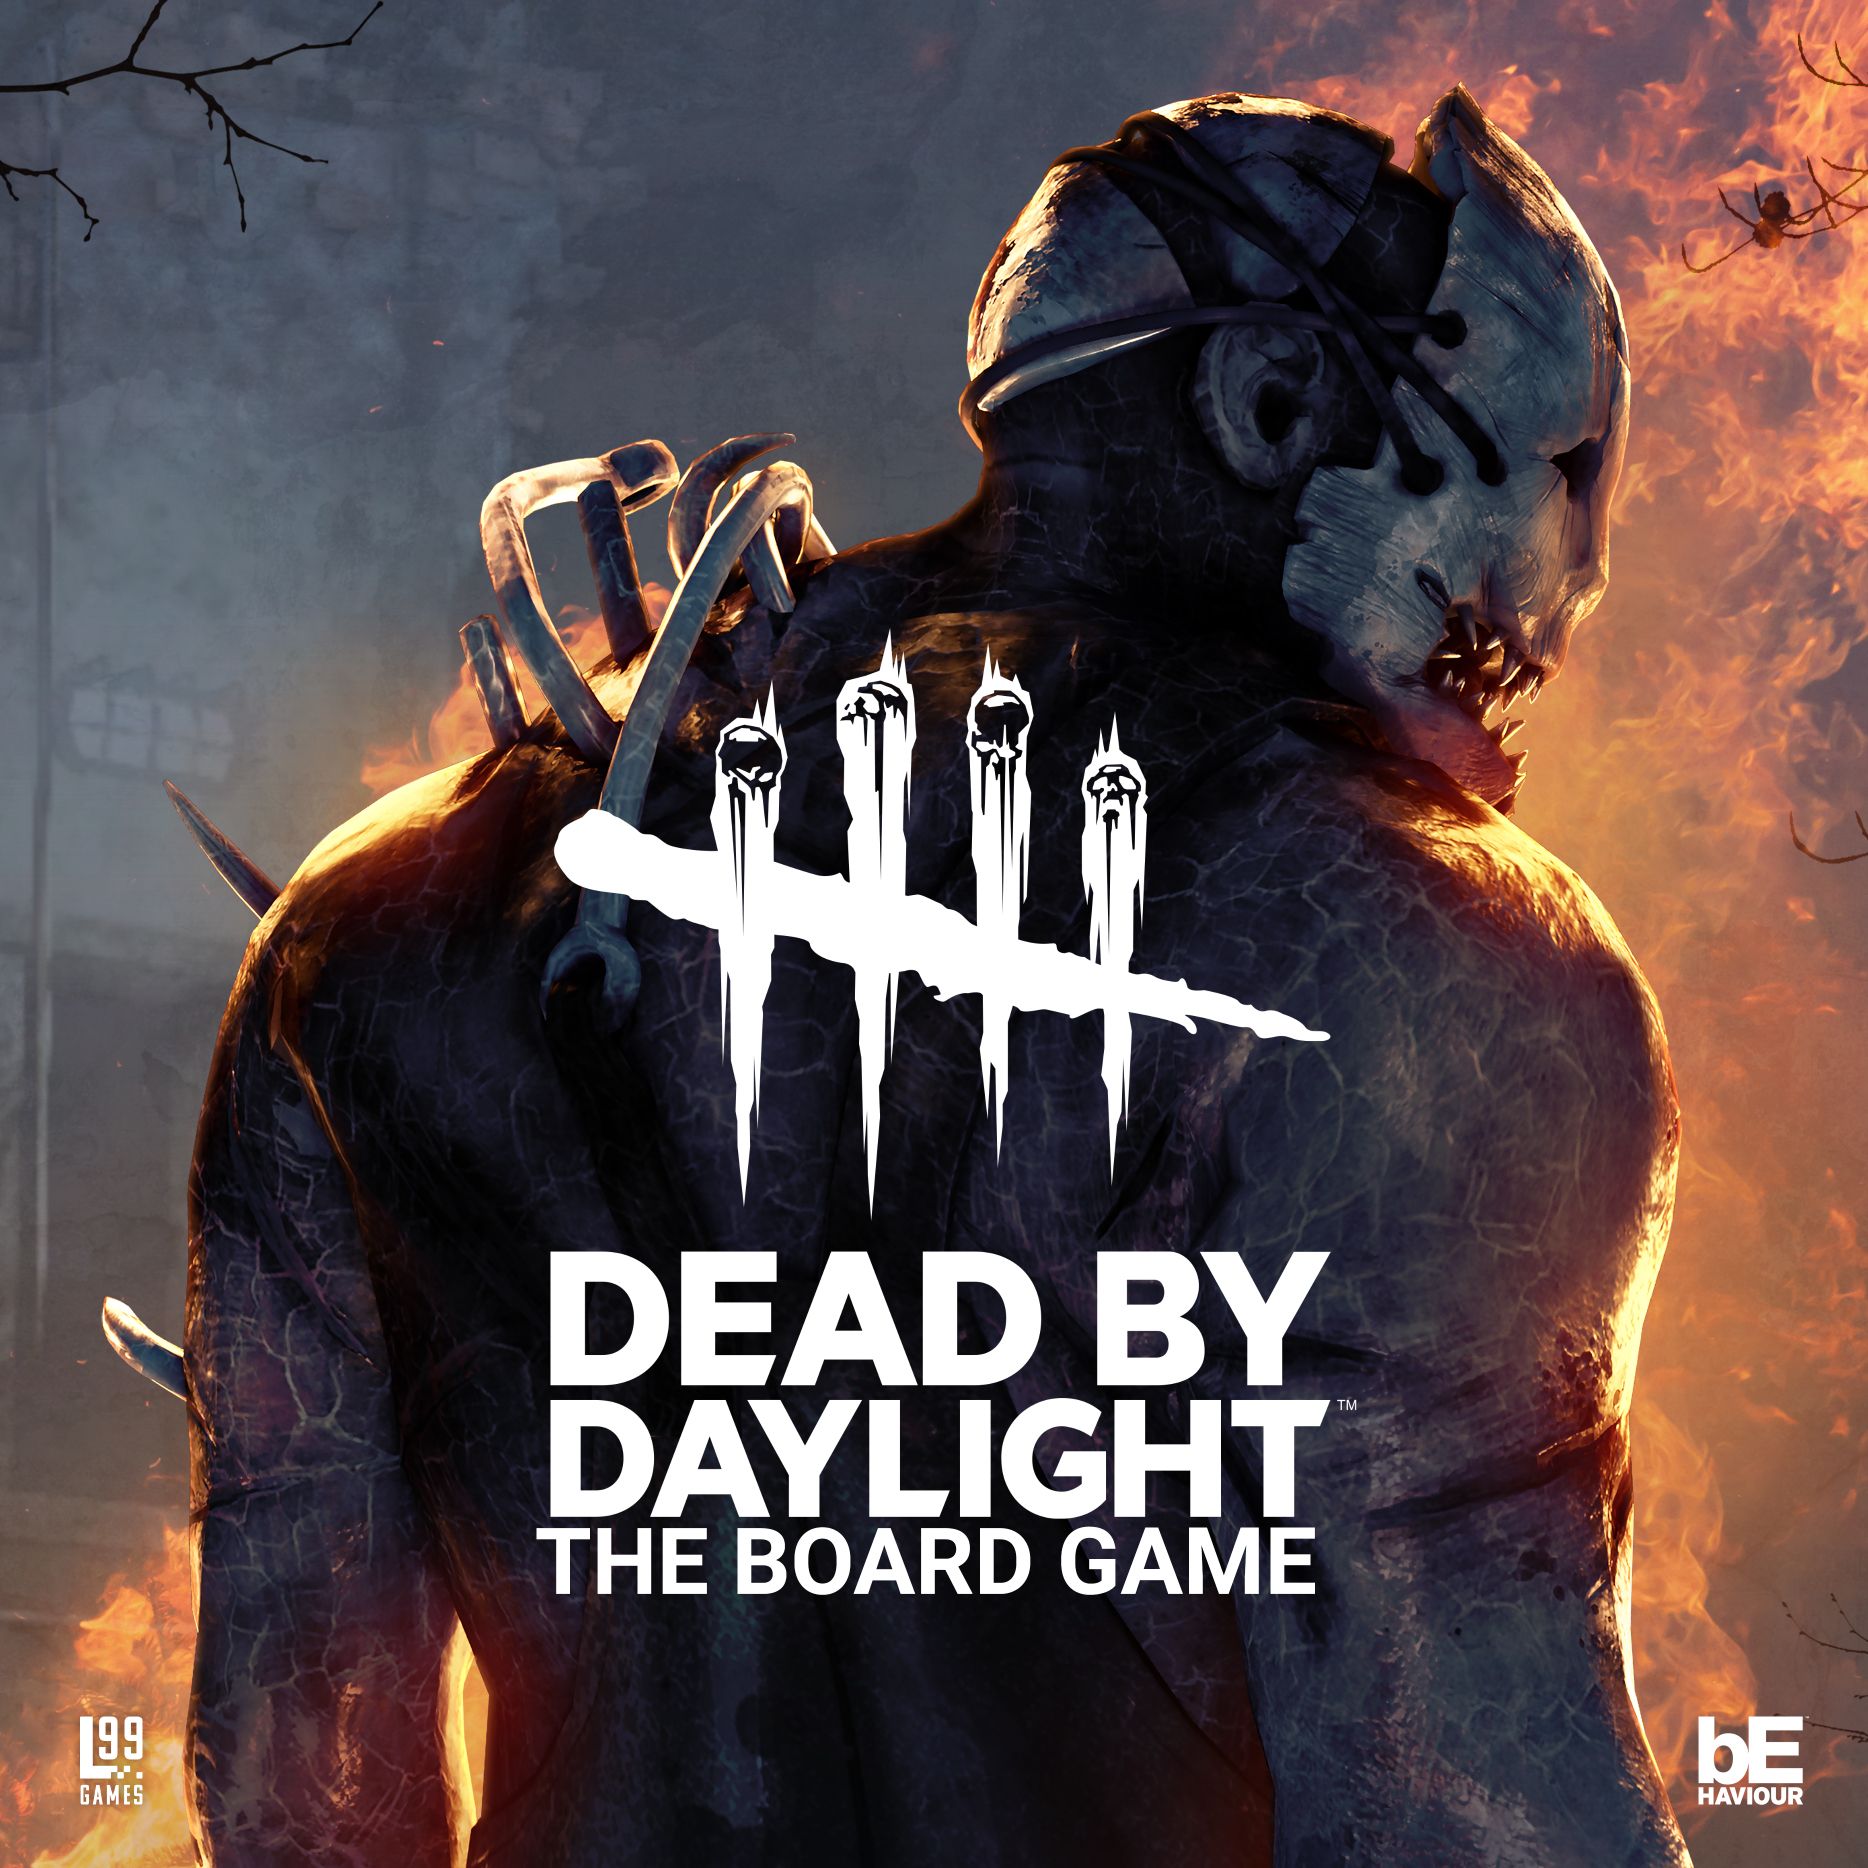 Dead By Daylight